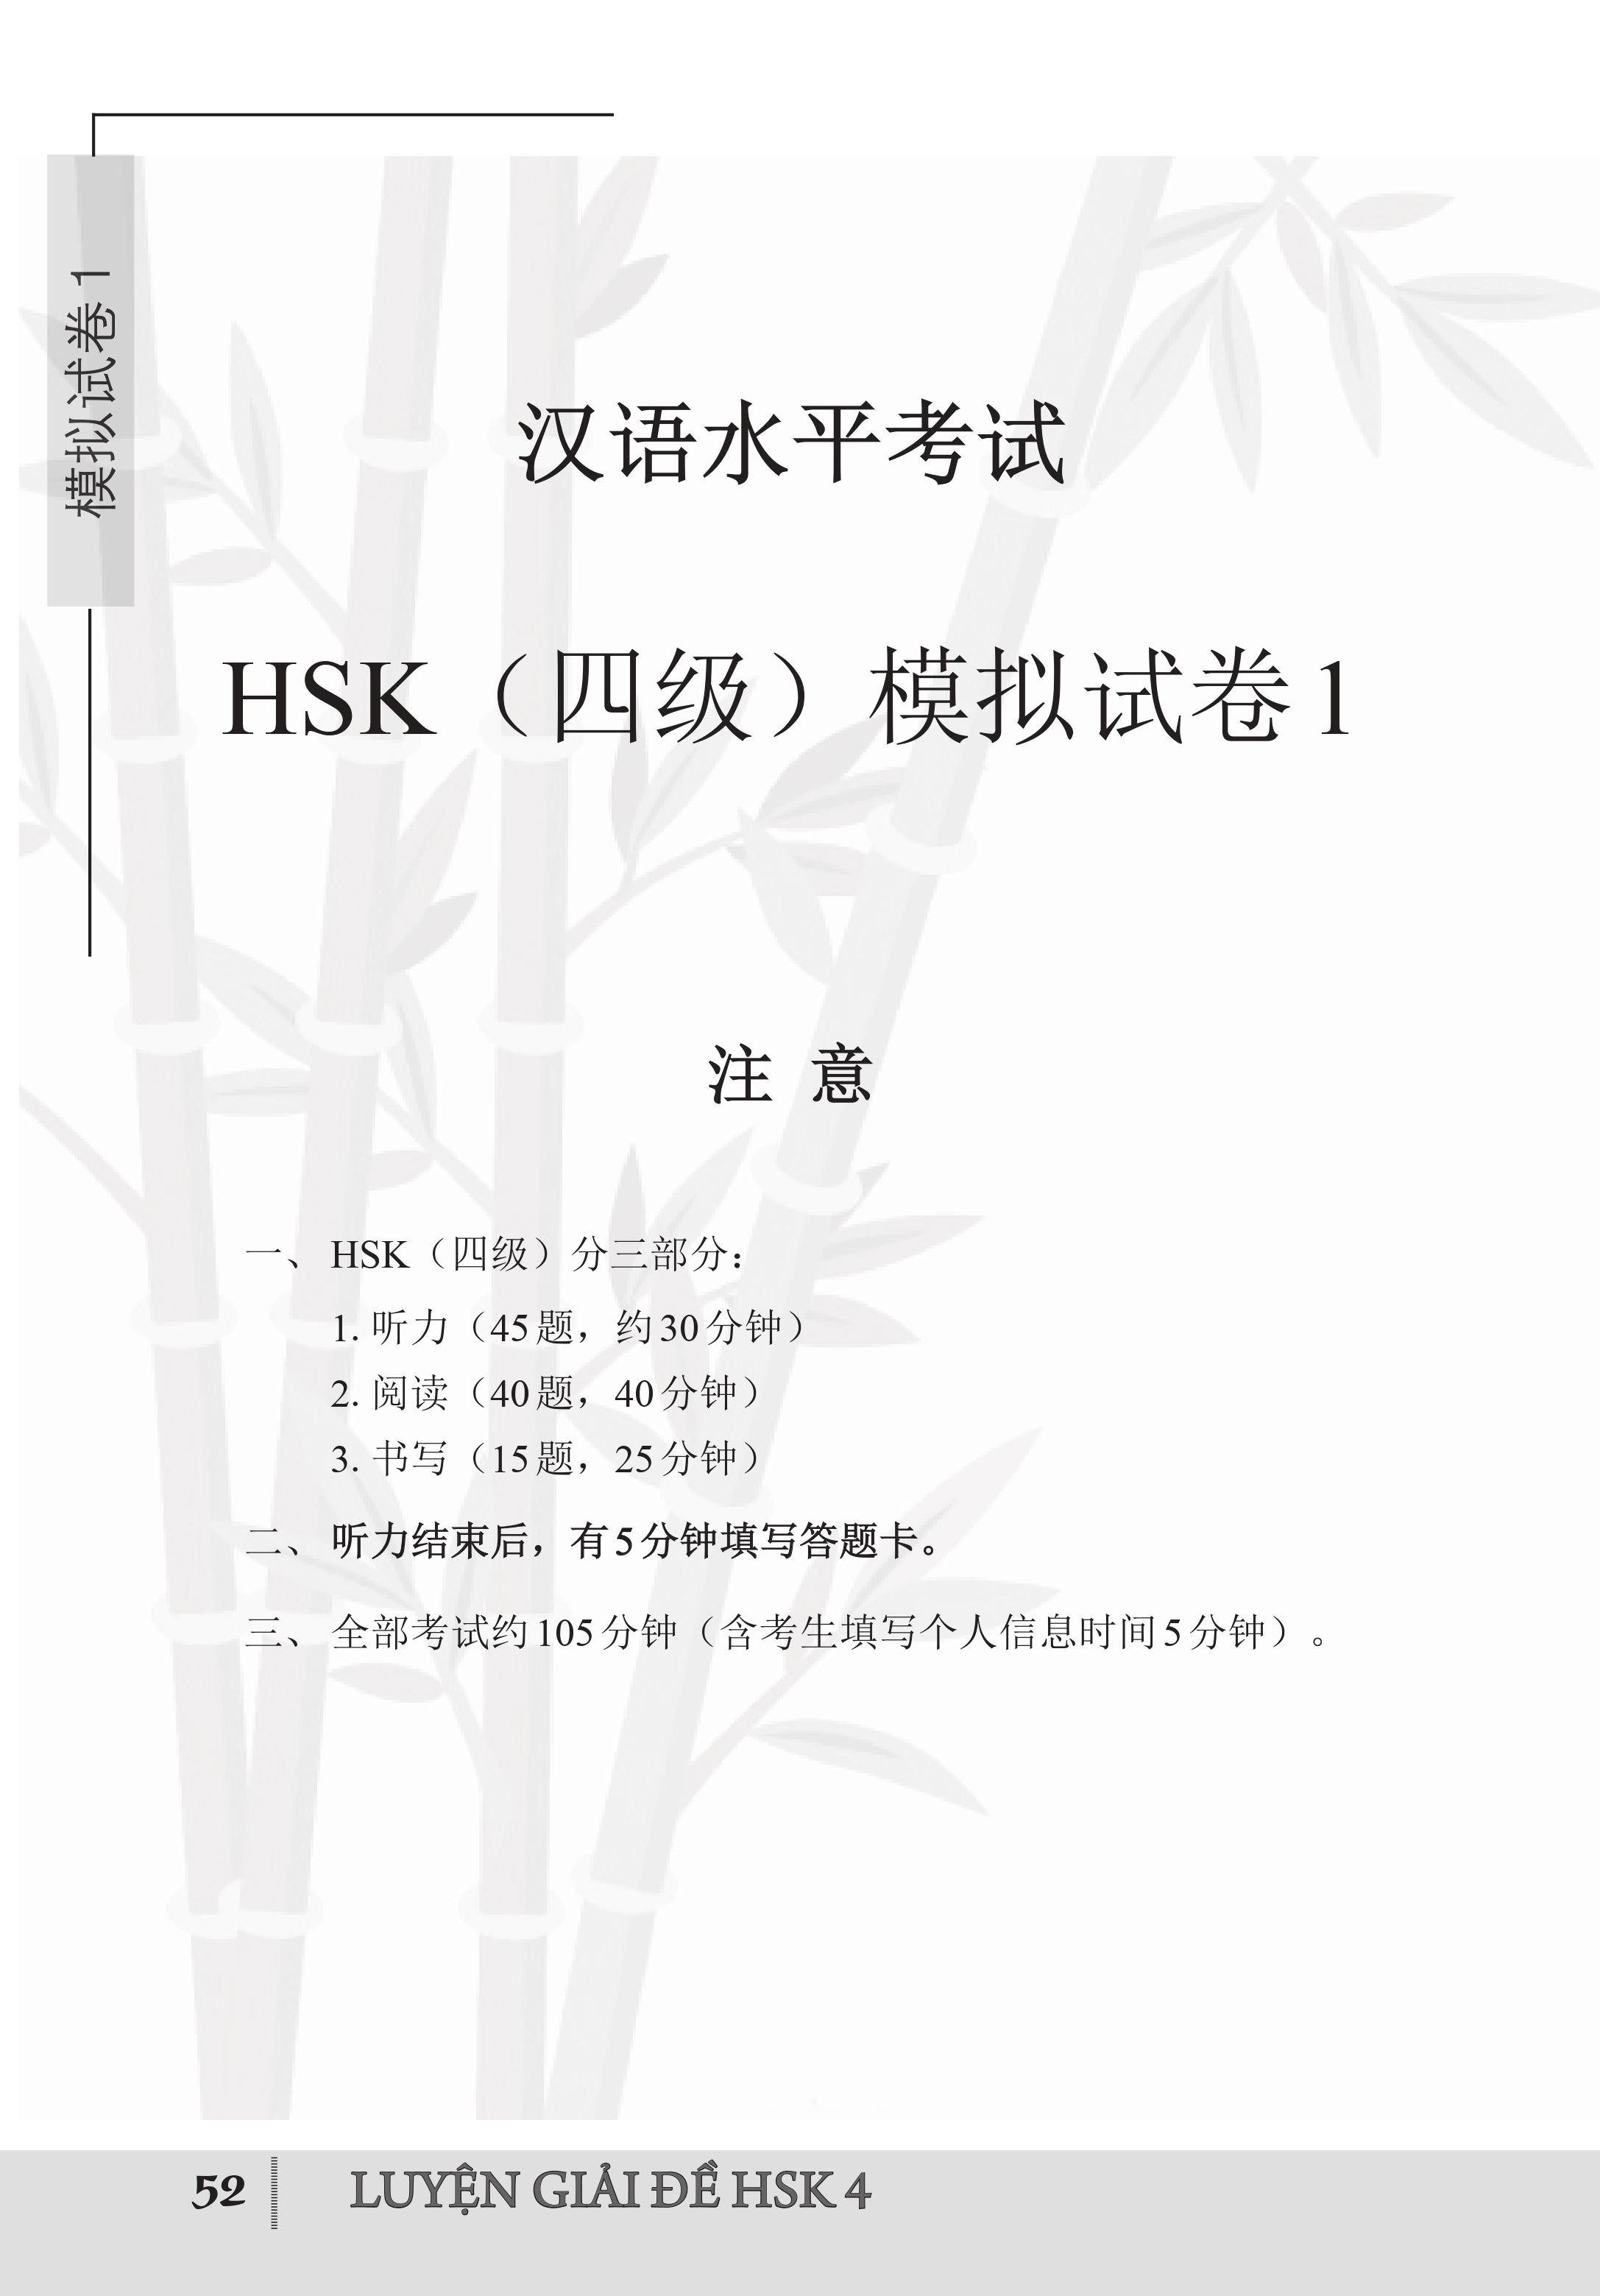 Combo 2 sách Luyện giải đề thi HSK cấp 4 có mp3 nge +Tuyển tập 400 mẫu bài dịch Trung – Việt, Việt – Trung hay nhất (Song ngữ Trung – Việt – có phiên âm, có Audio nghe)+DVD tài liệu